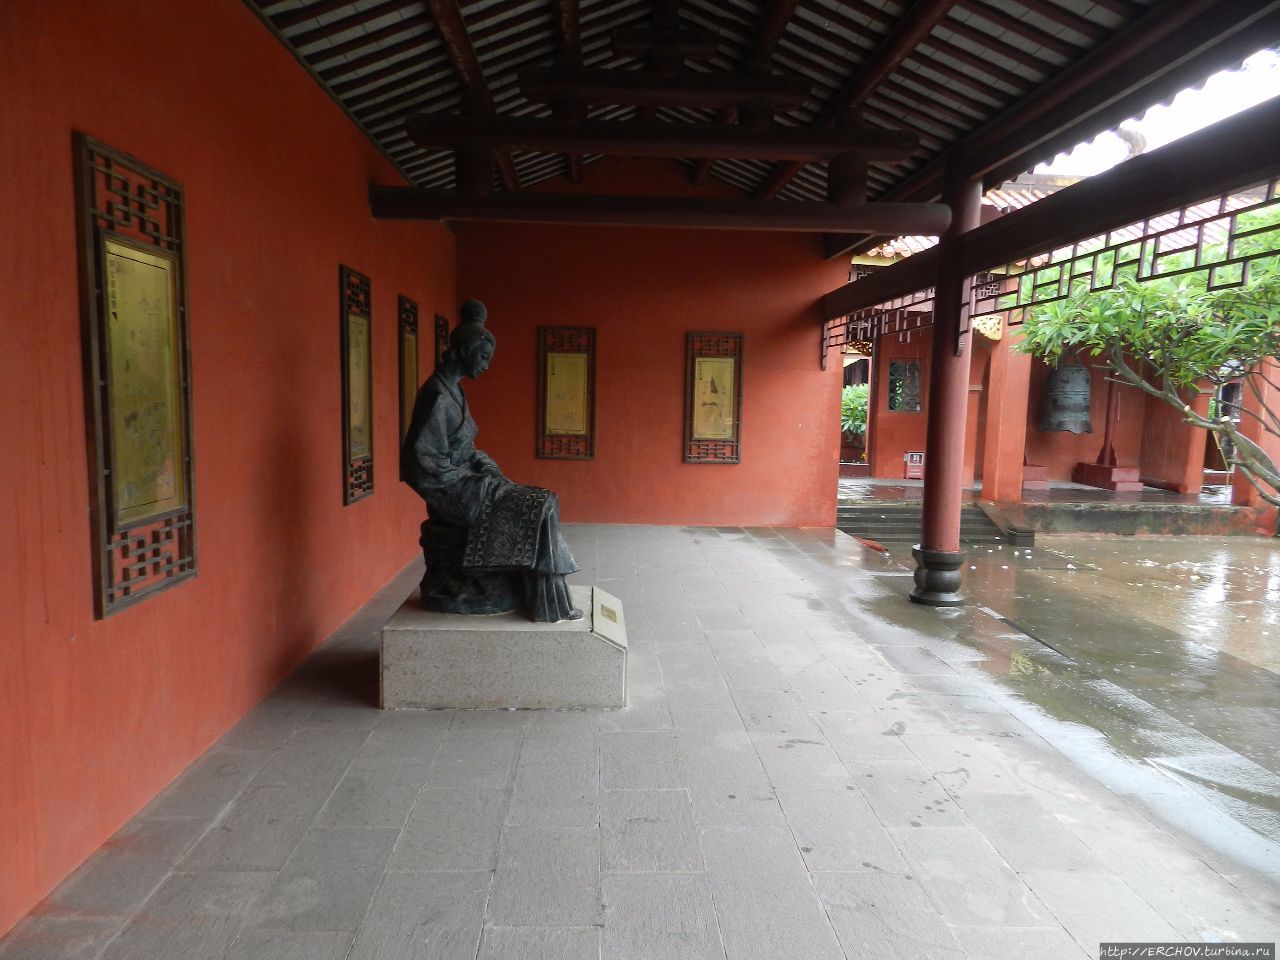 Древний город Ячжоу  崖州古城 Ячжоу, Китай